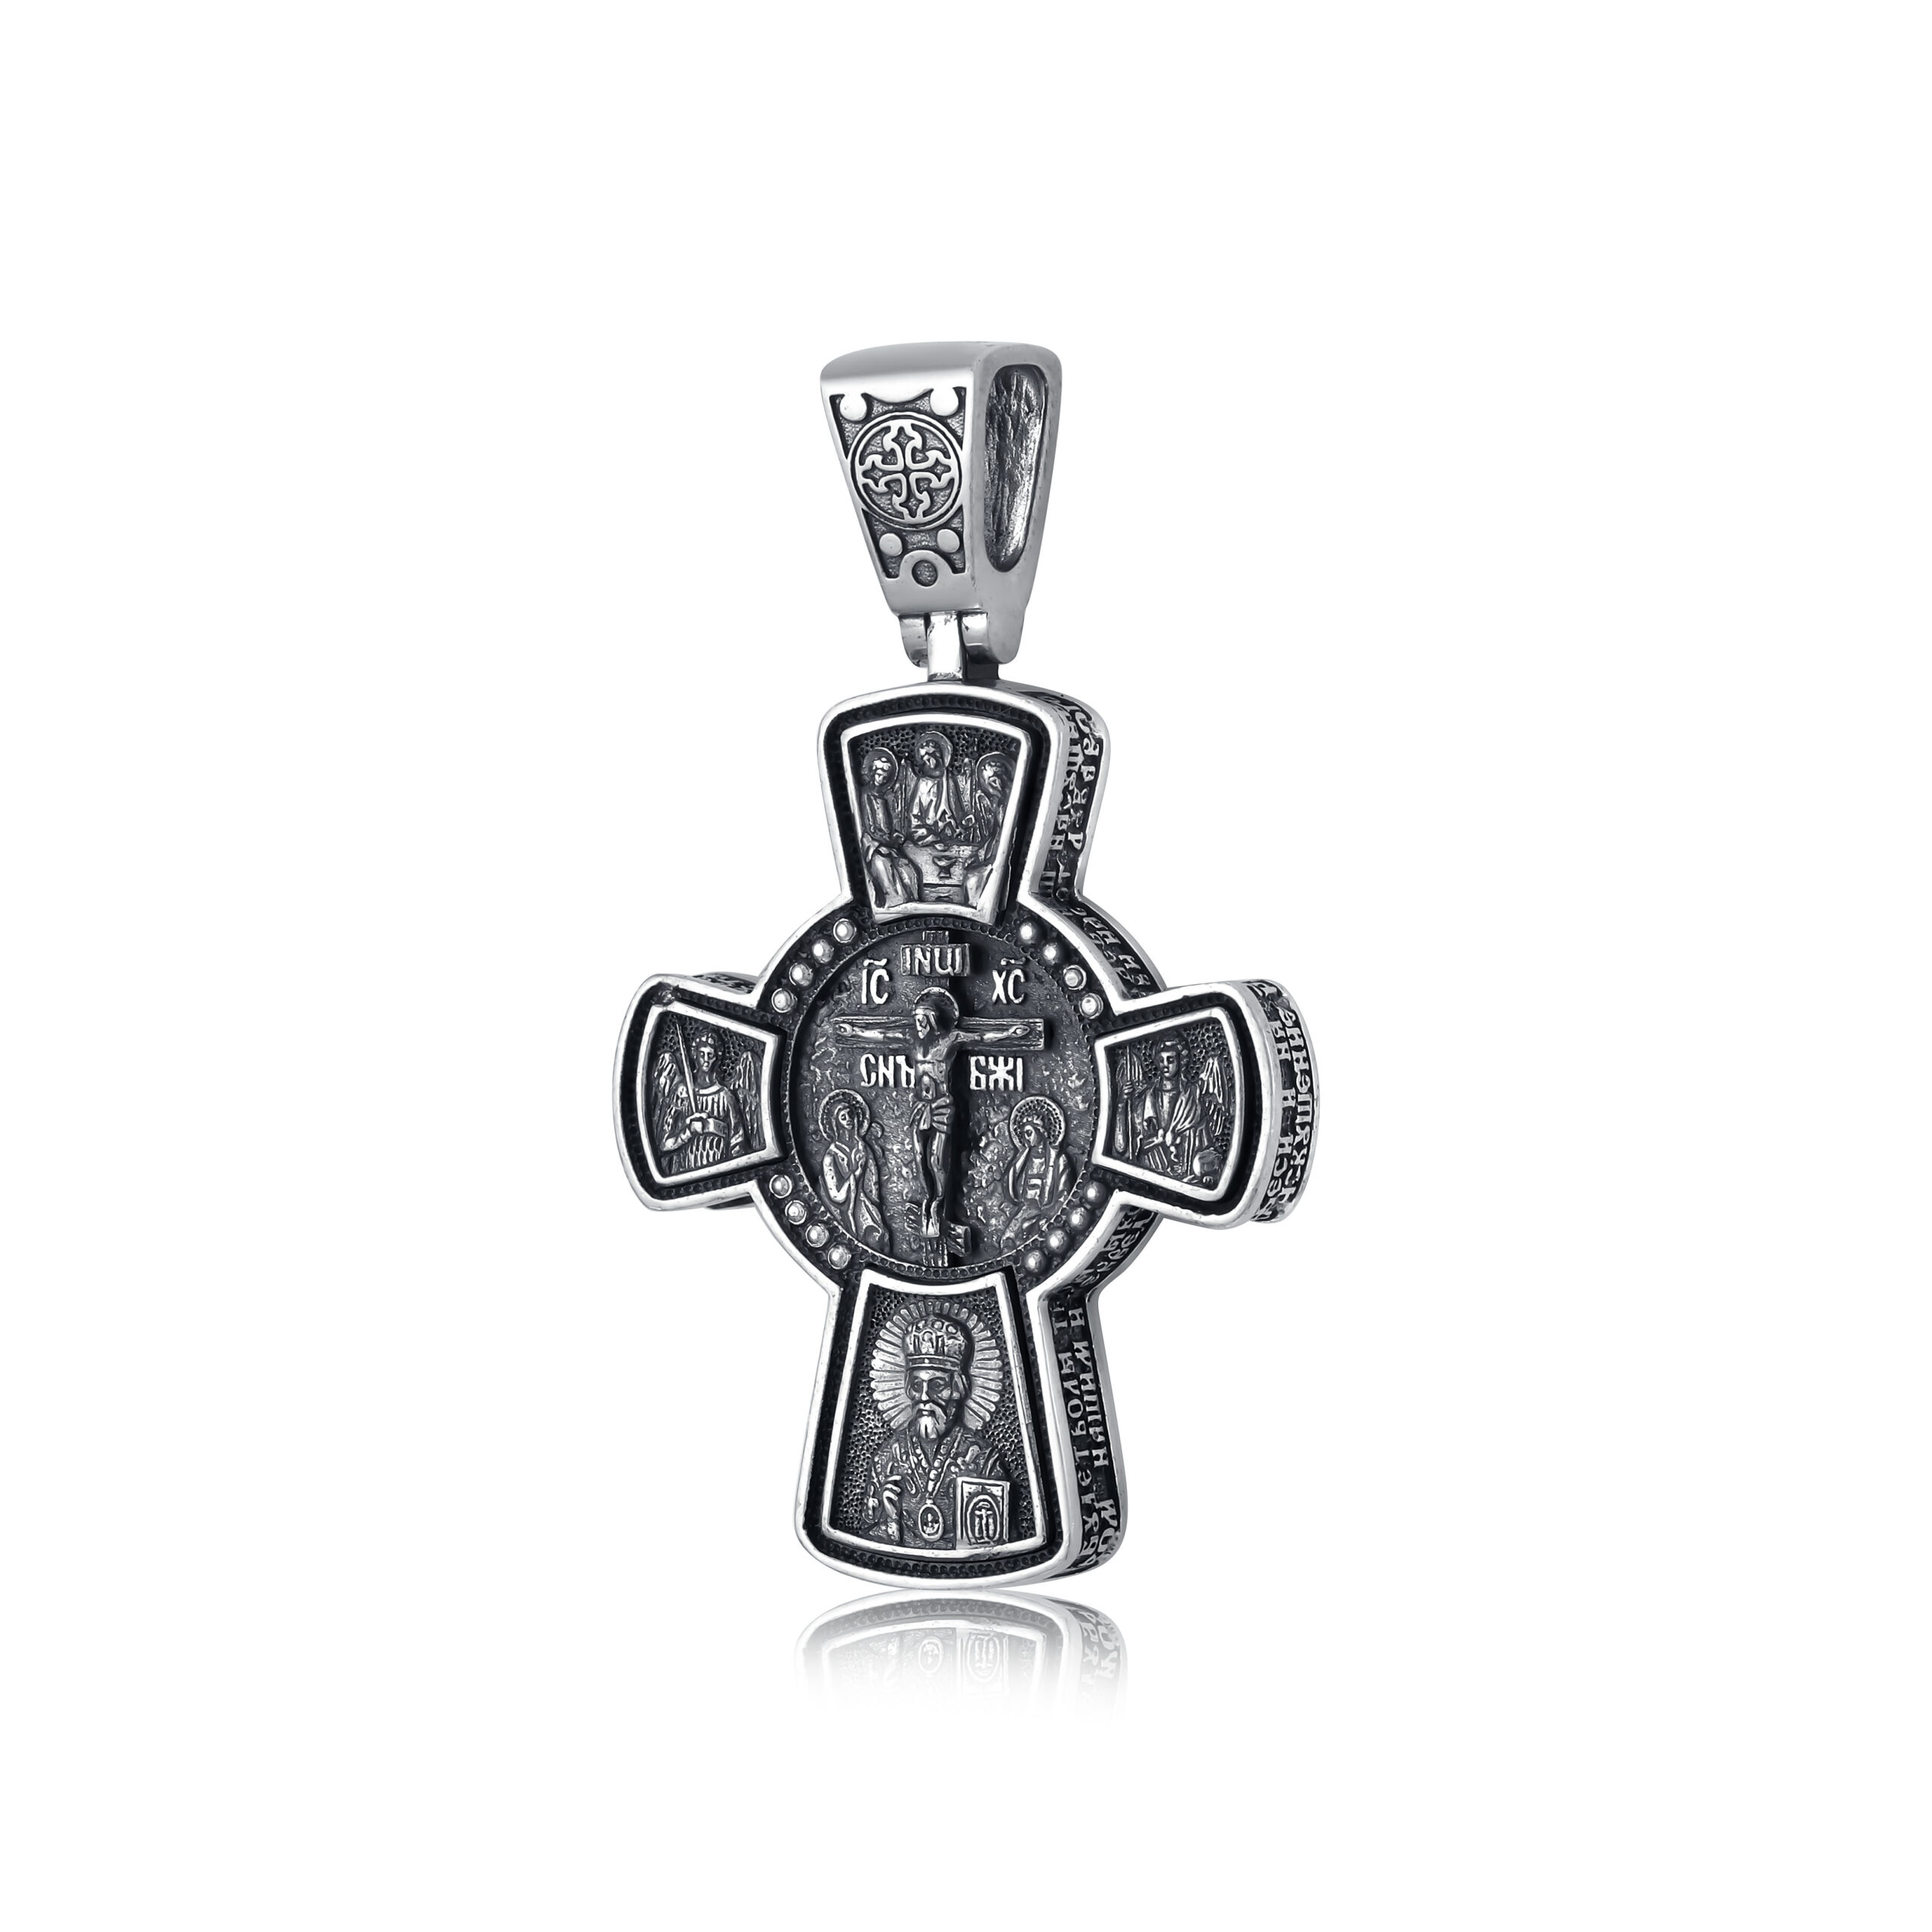 Как должен выглядеть православный нательный крестик